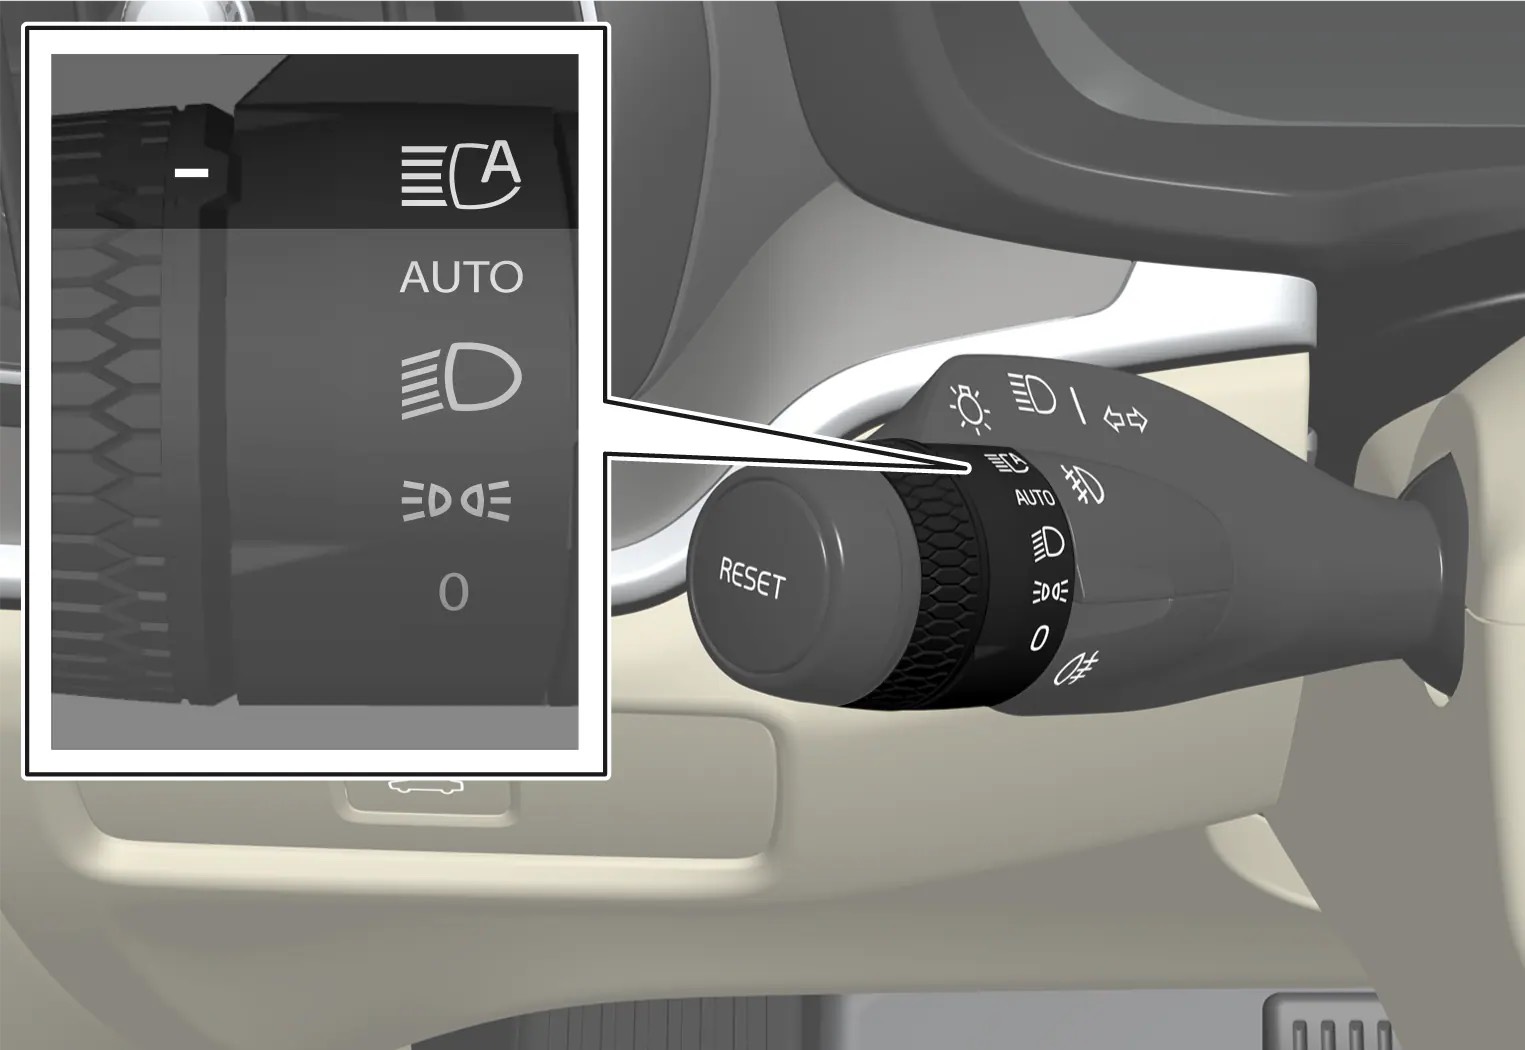 Active High Beam - Tính năng an toàn thông minh trên đèn pha xe Volvo